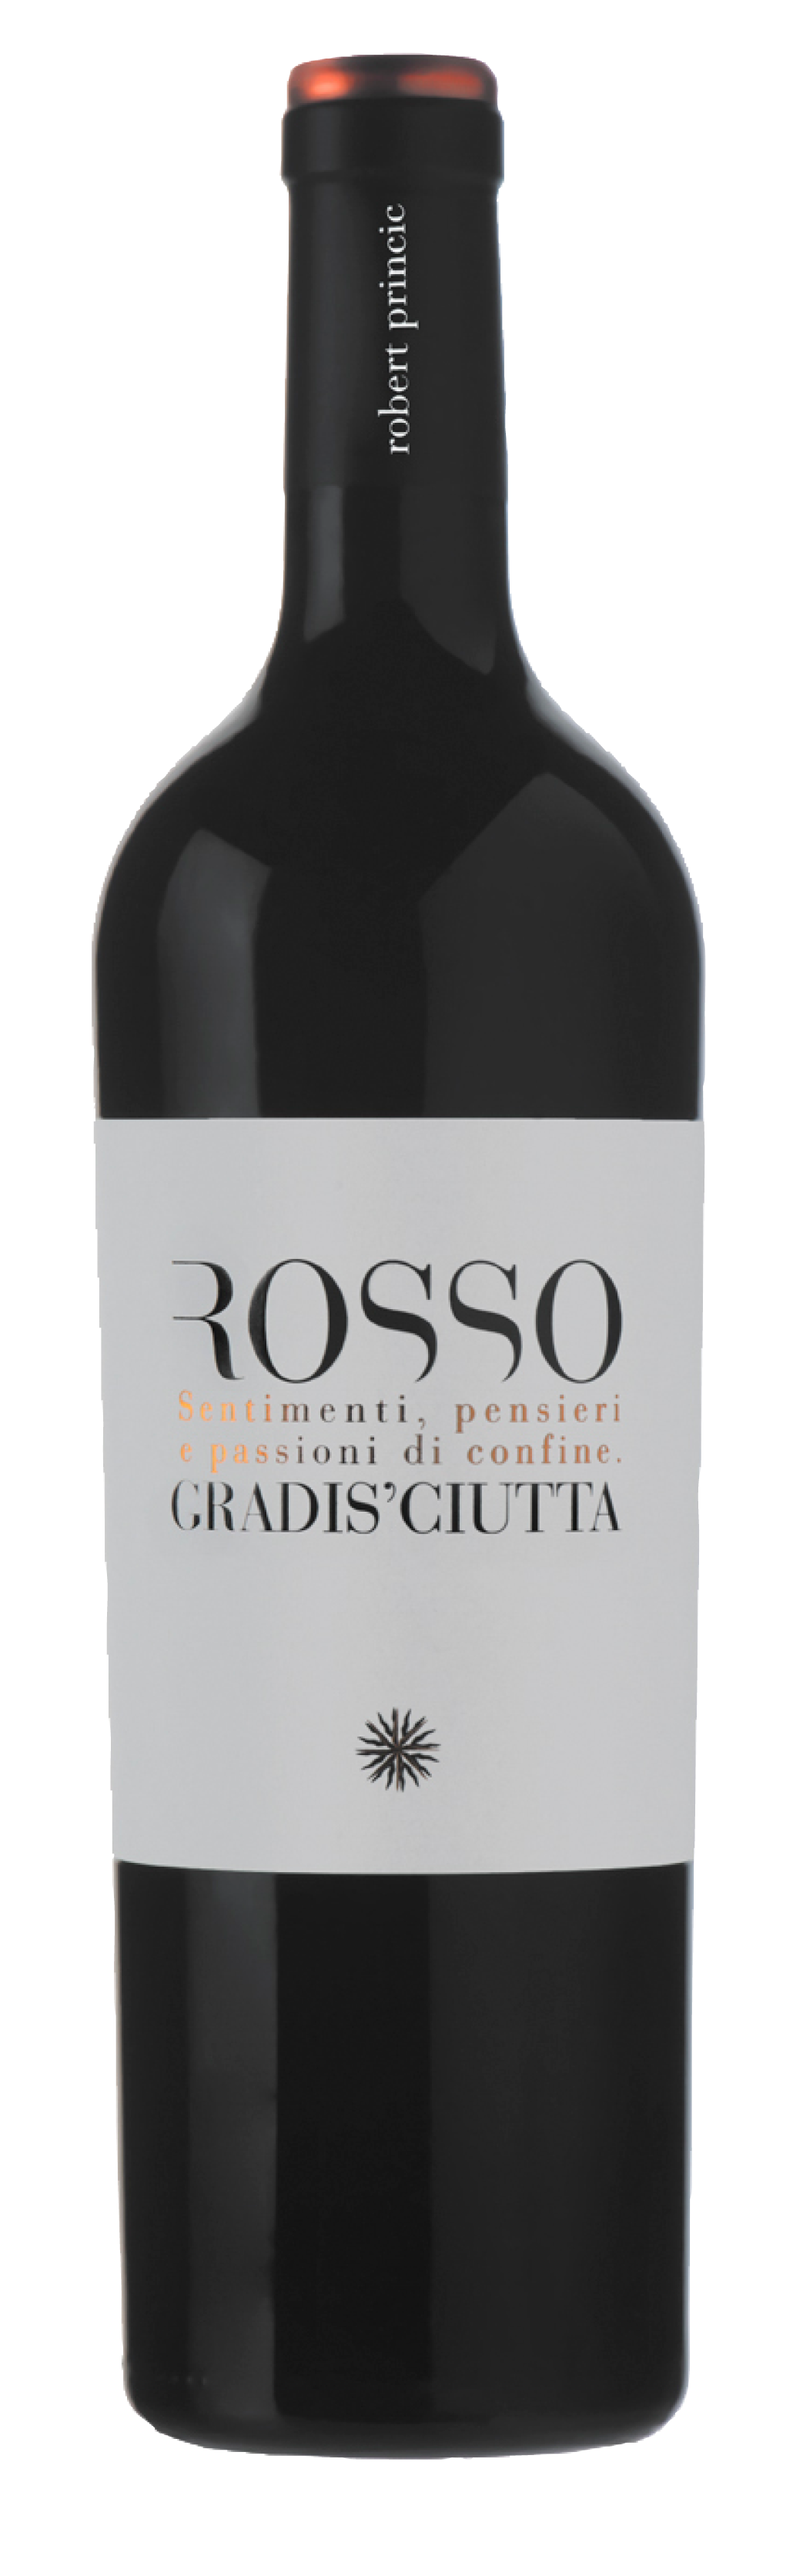 Gradis'ciutta<br />2016 Rosso<br>Italy